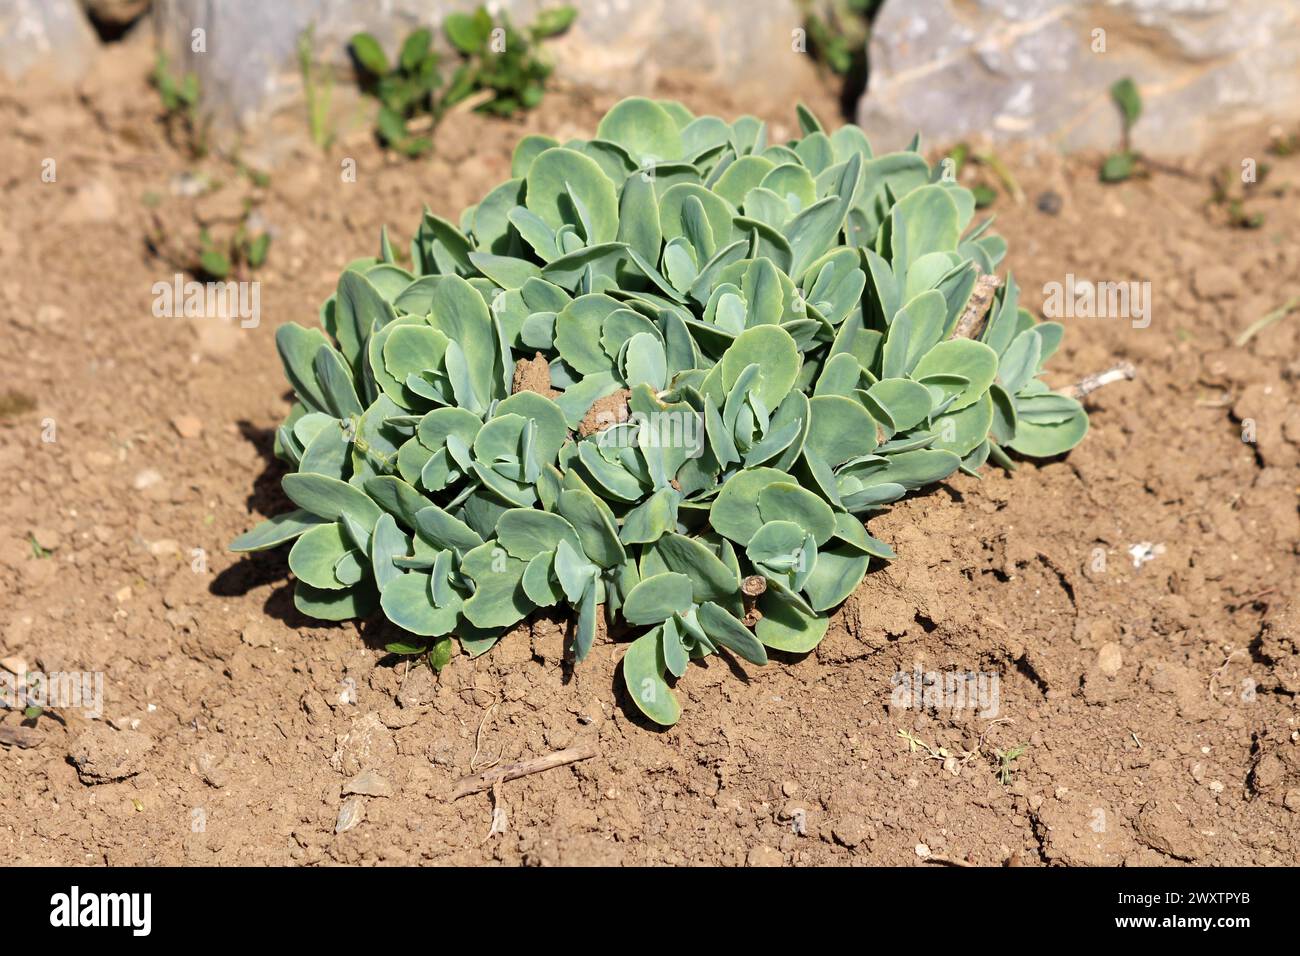 Hausgemachte Sedum oder Stonecrop Hardy Sukkulent Boden bedeckt mehrjährige grüne Pflanze mit dicken saftigen Blättern und fleischigen Stielen, die in lokalen Städten gepflanzt werden Stockfoto